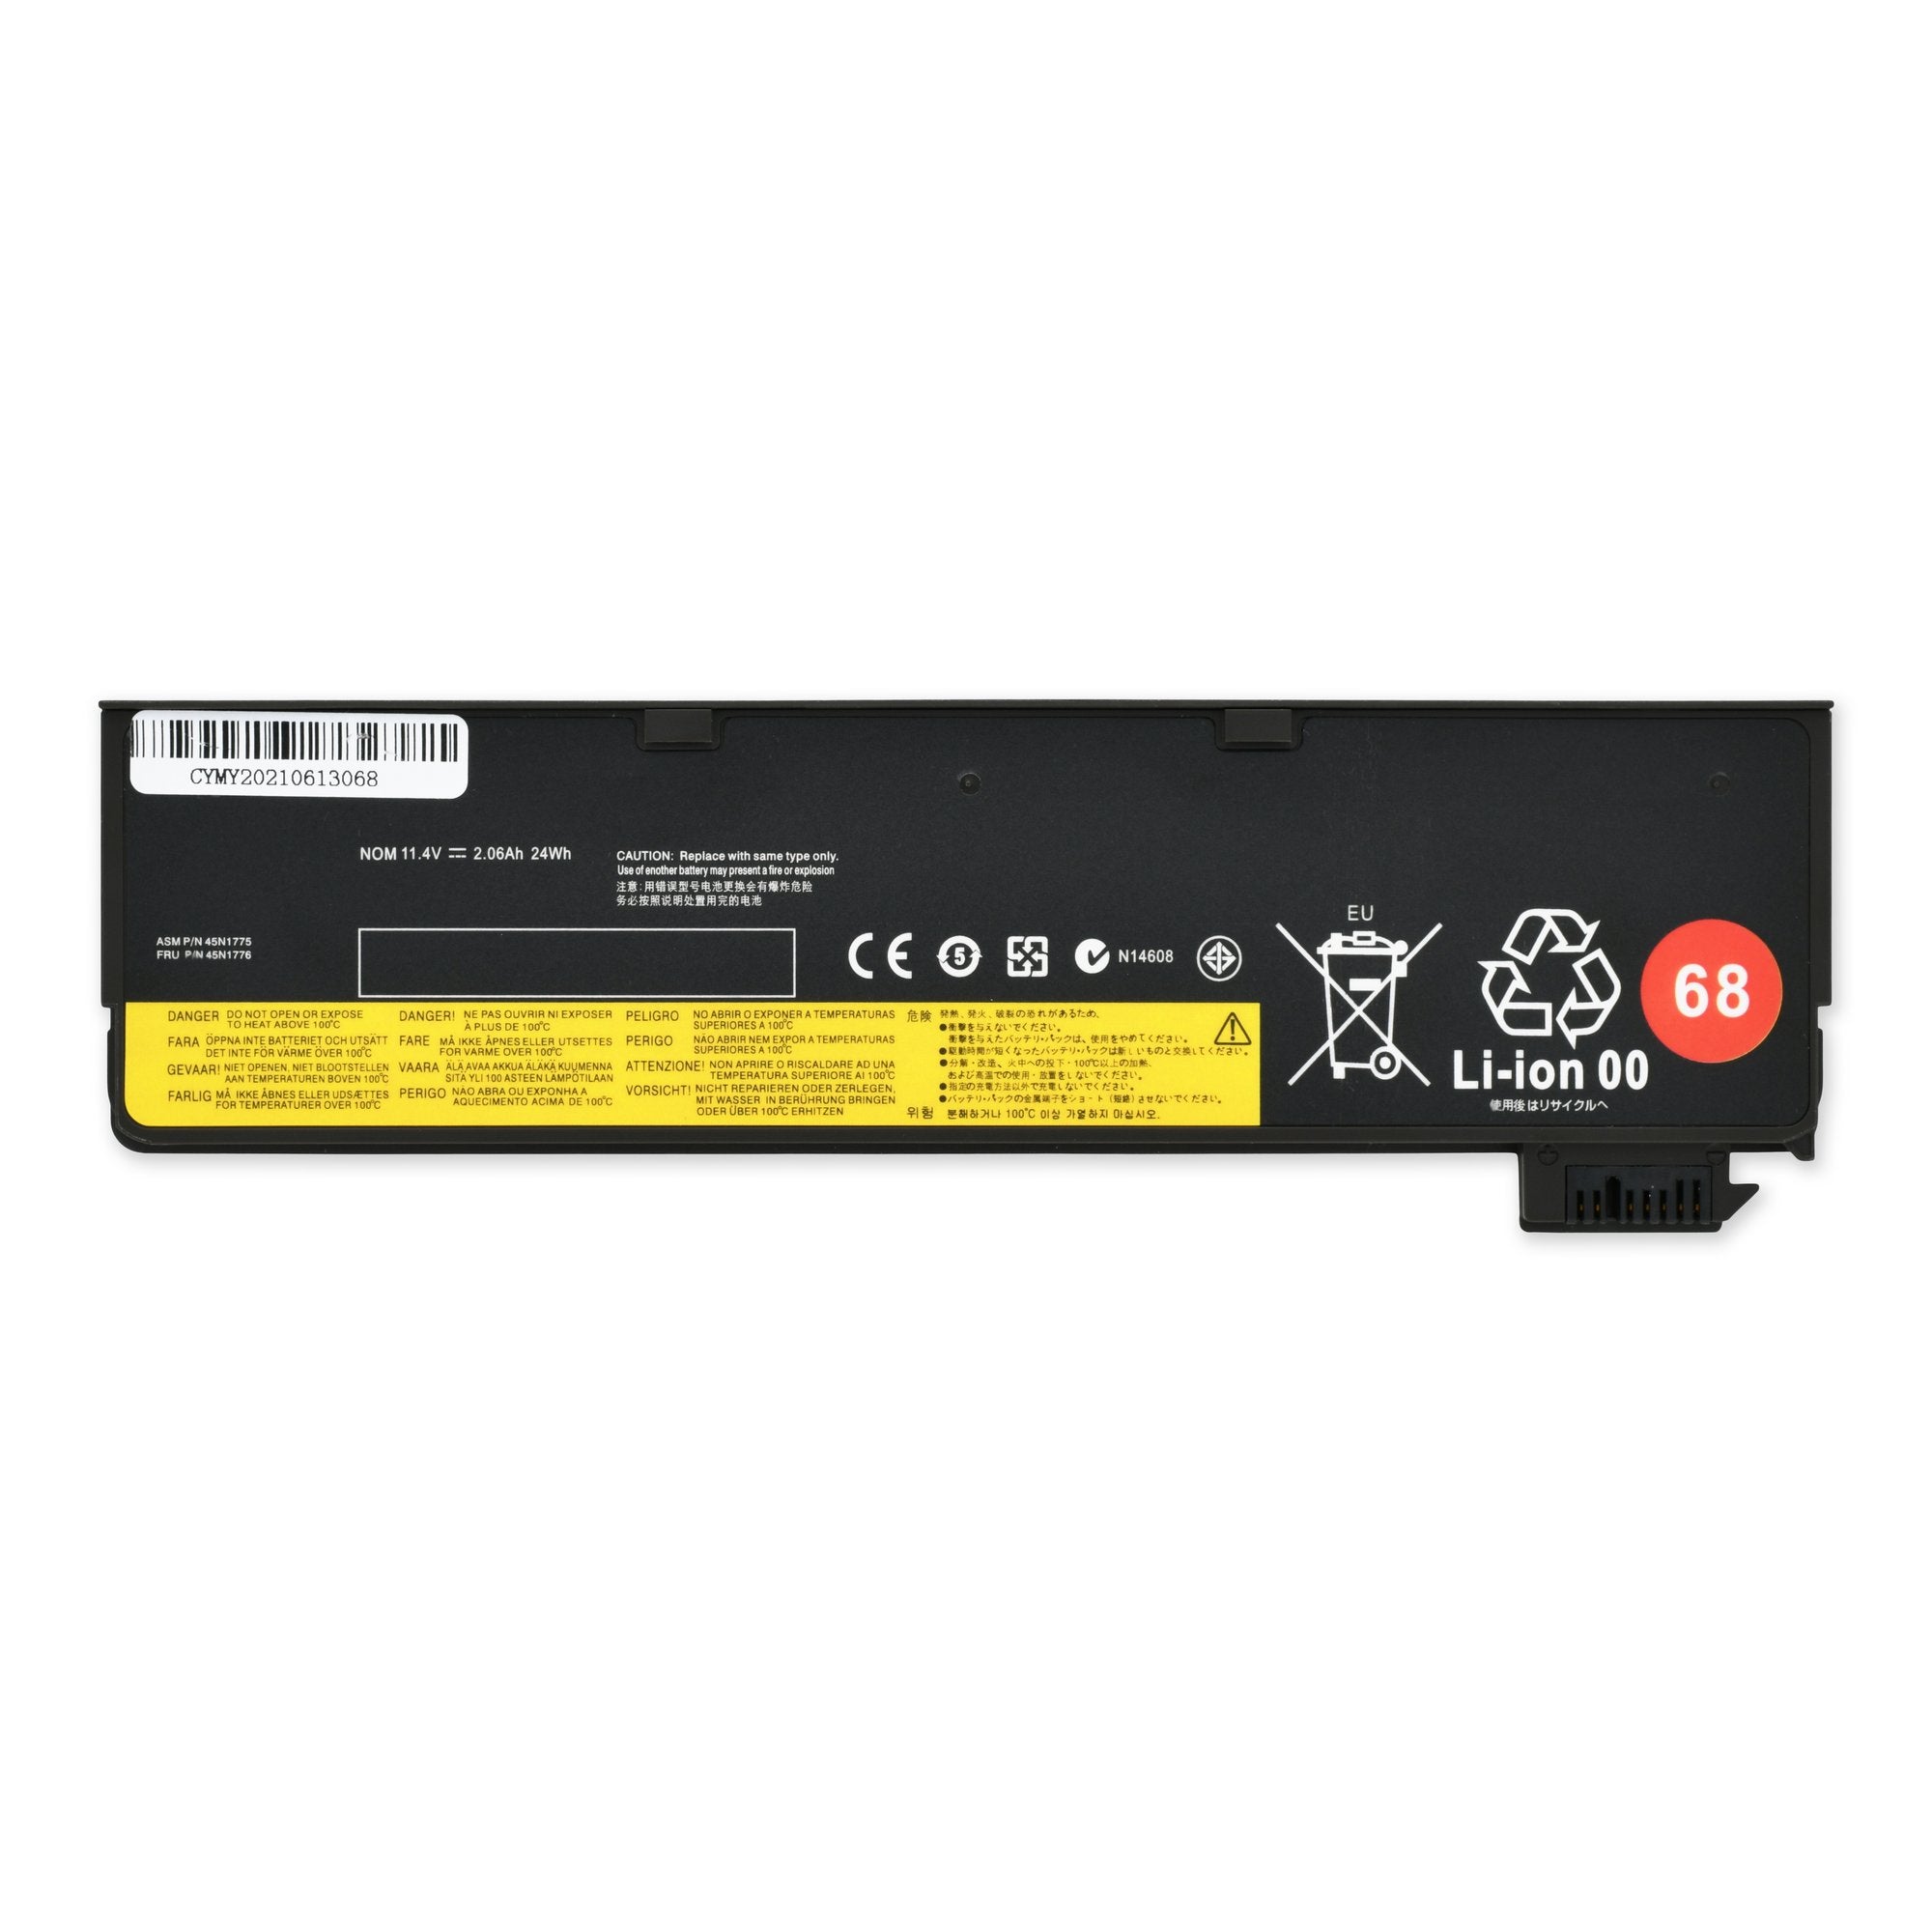 Lenovo 121500146 External Battery New